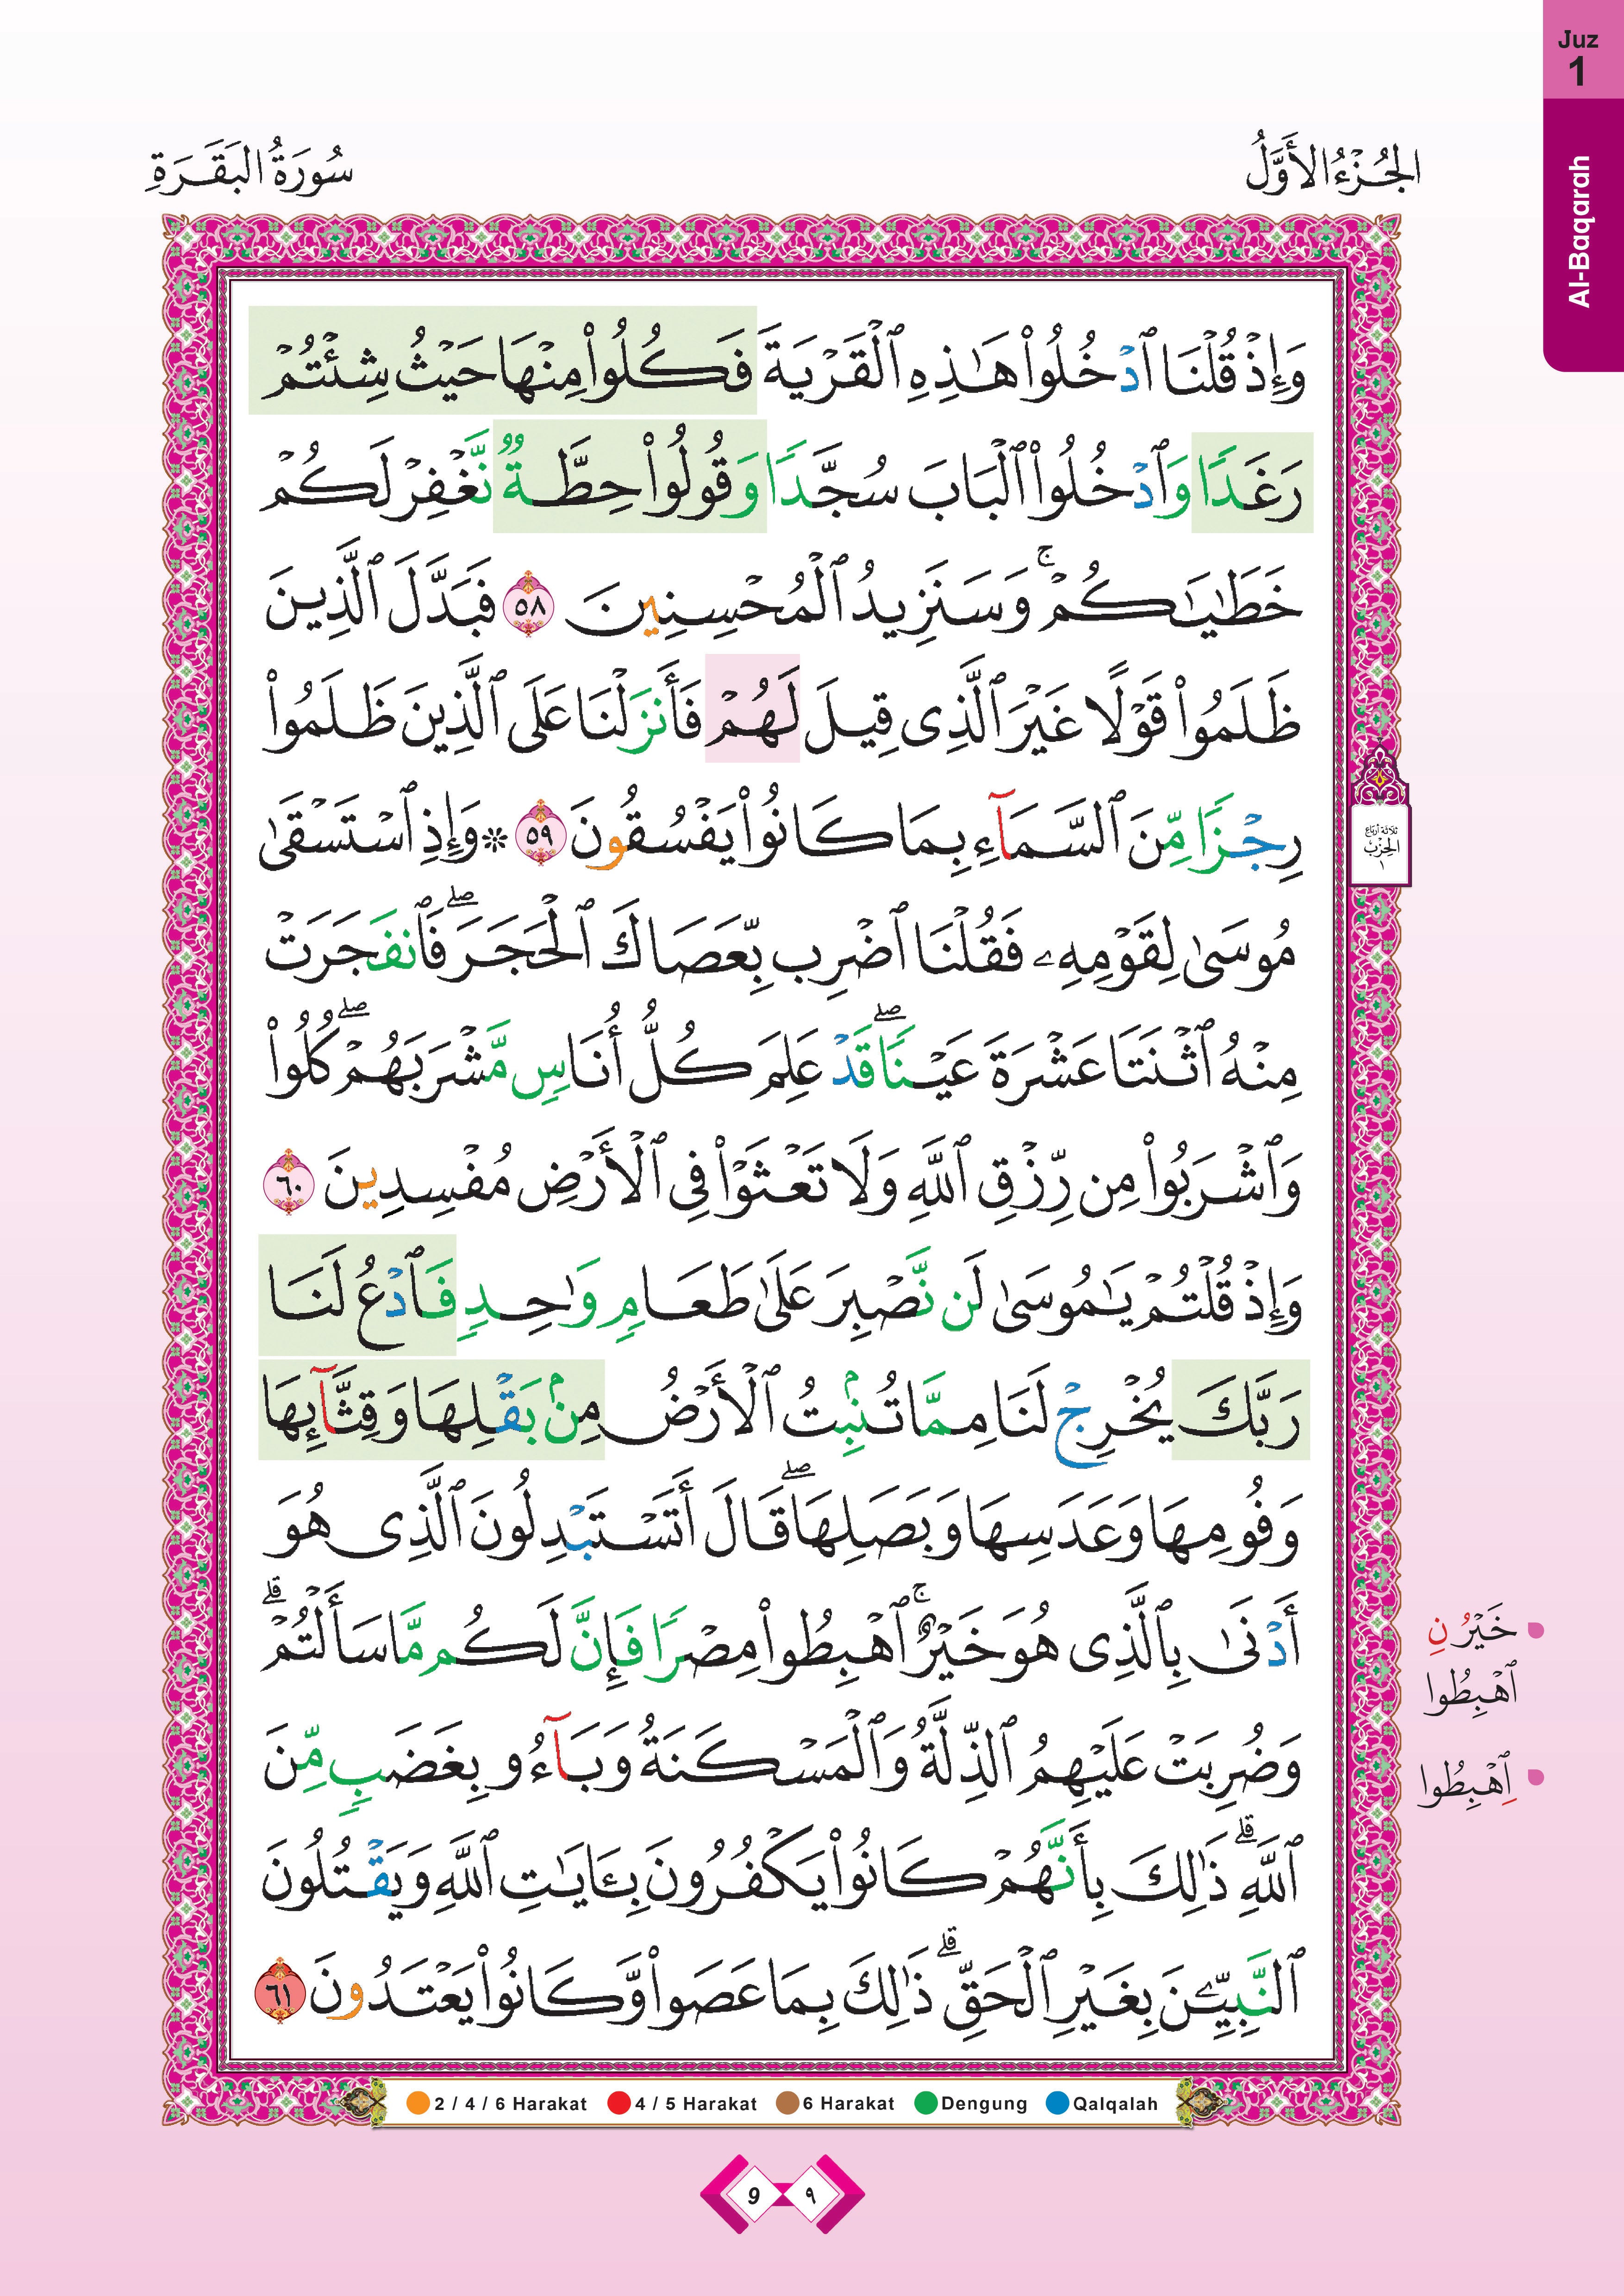 Al-Quran Al-Karim Tajwid Dan Waqaf & Ibtida’ At-Tashil - (TBAQ1058)